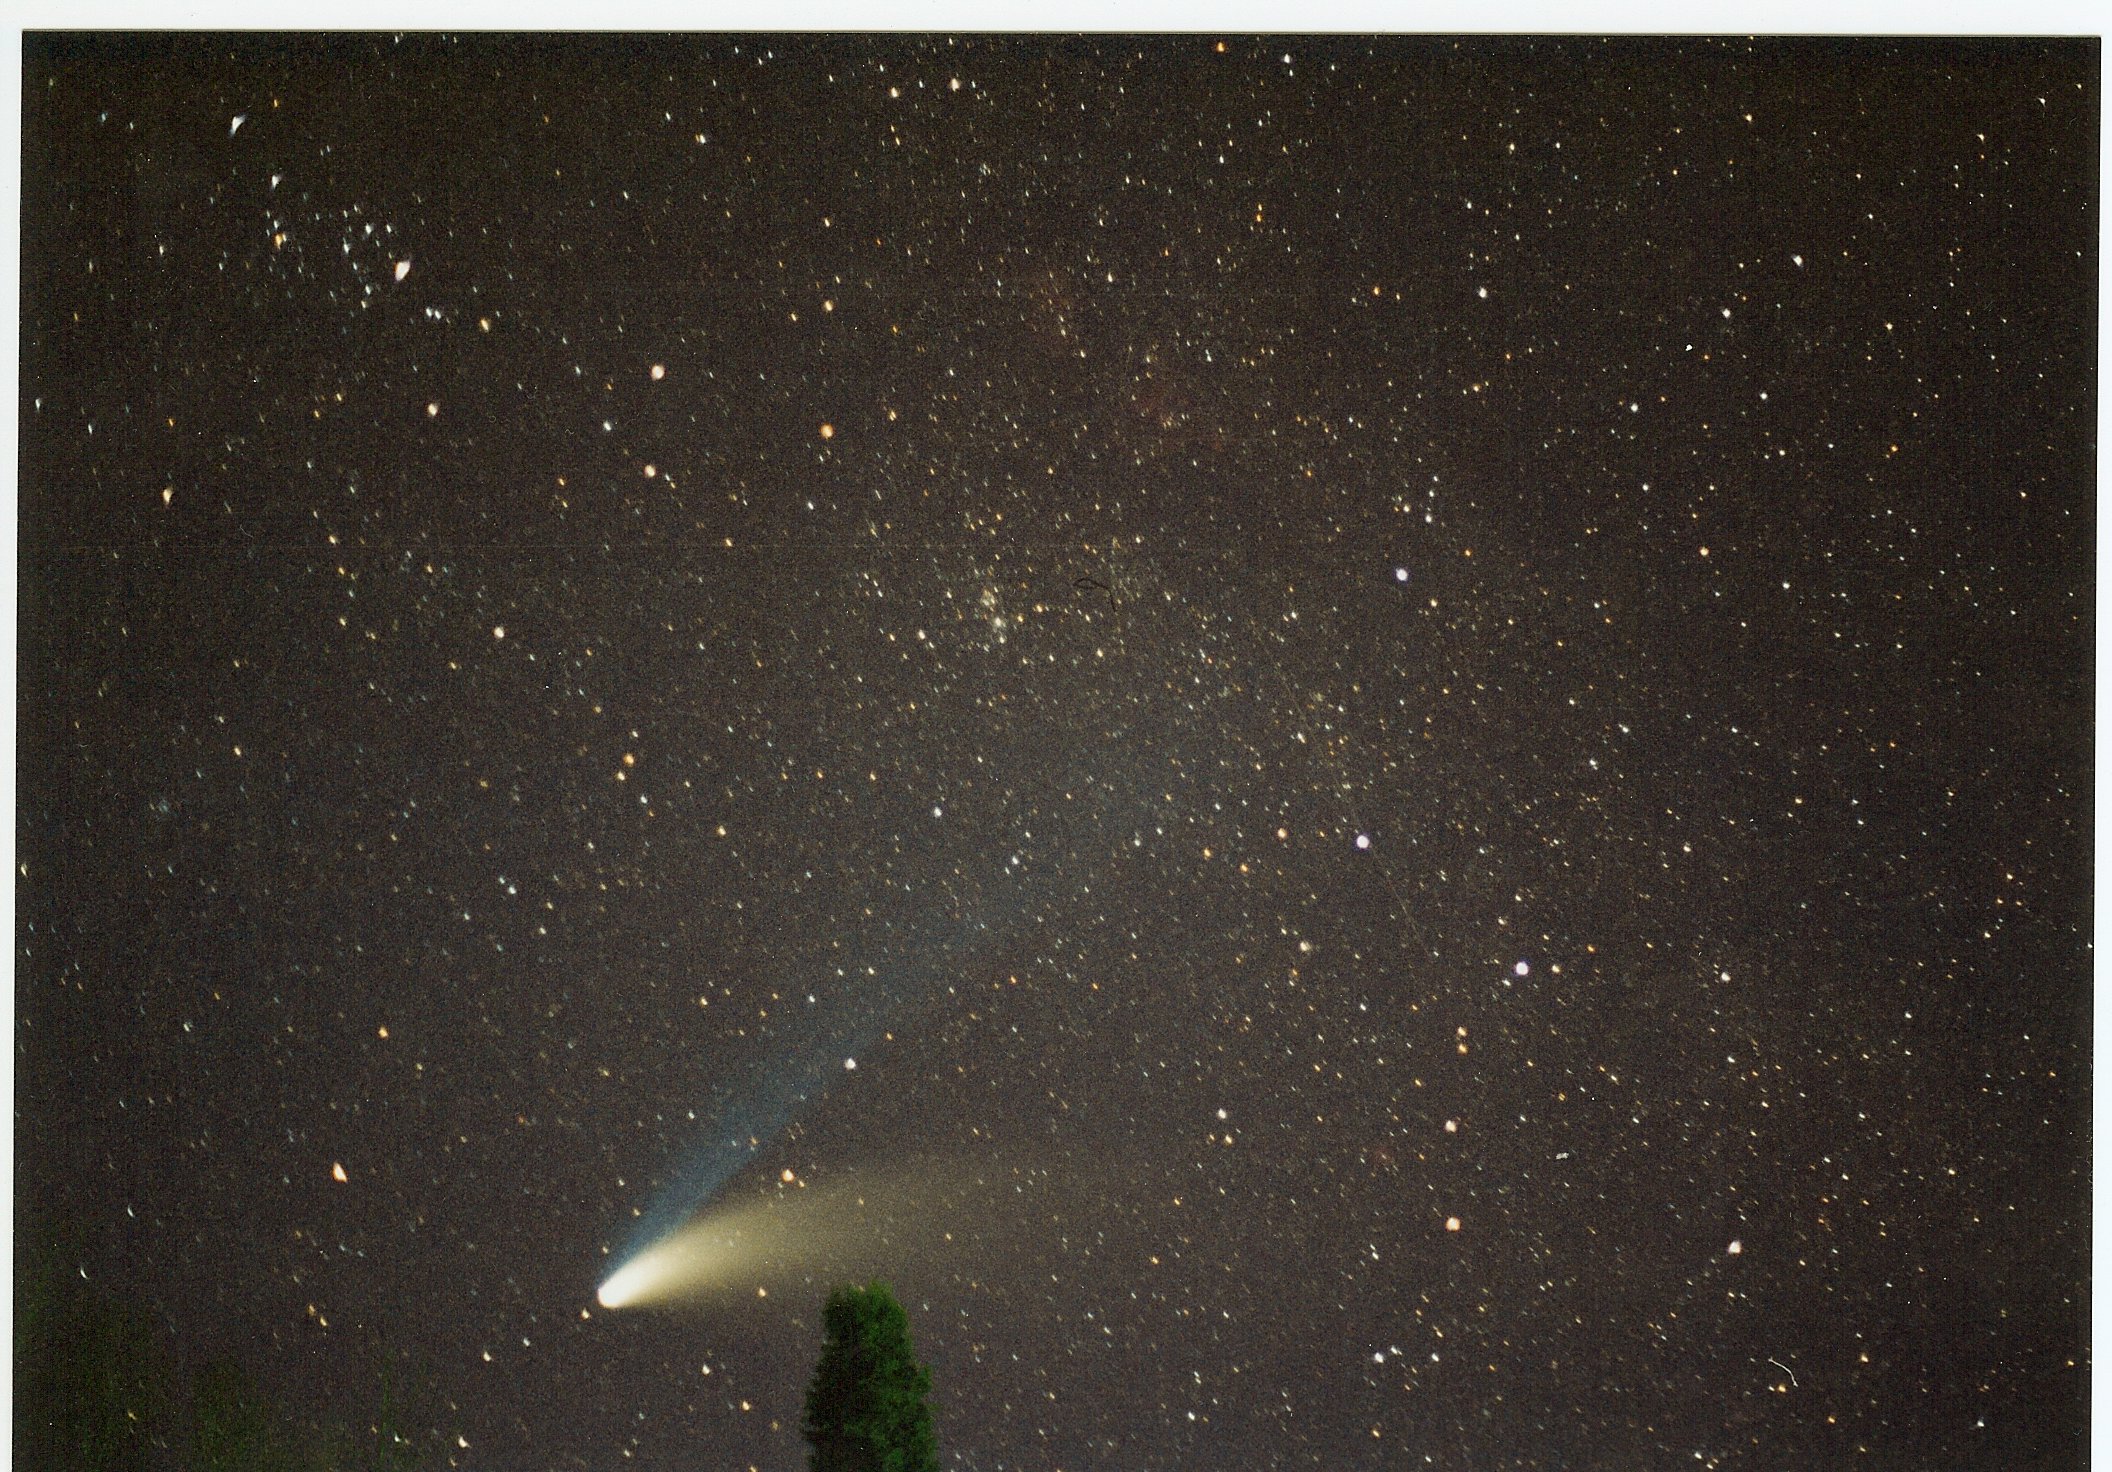 CometHale-Bopp3 w meteor